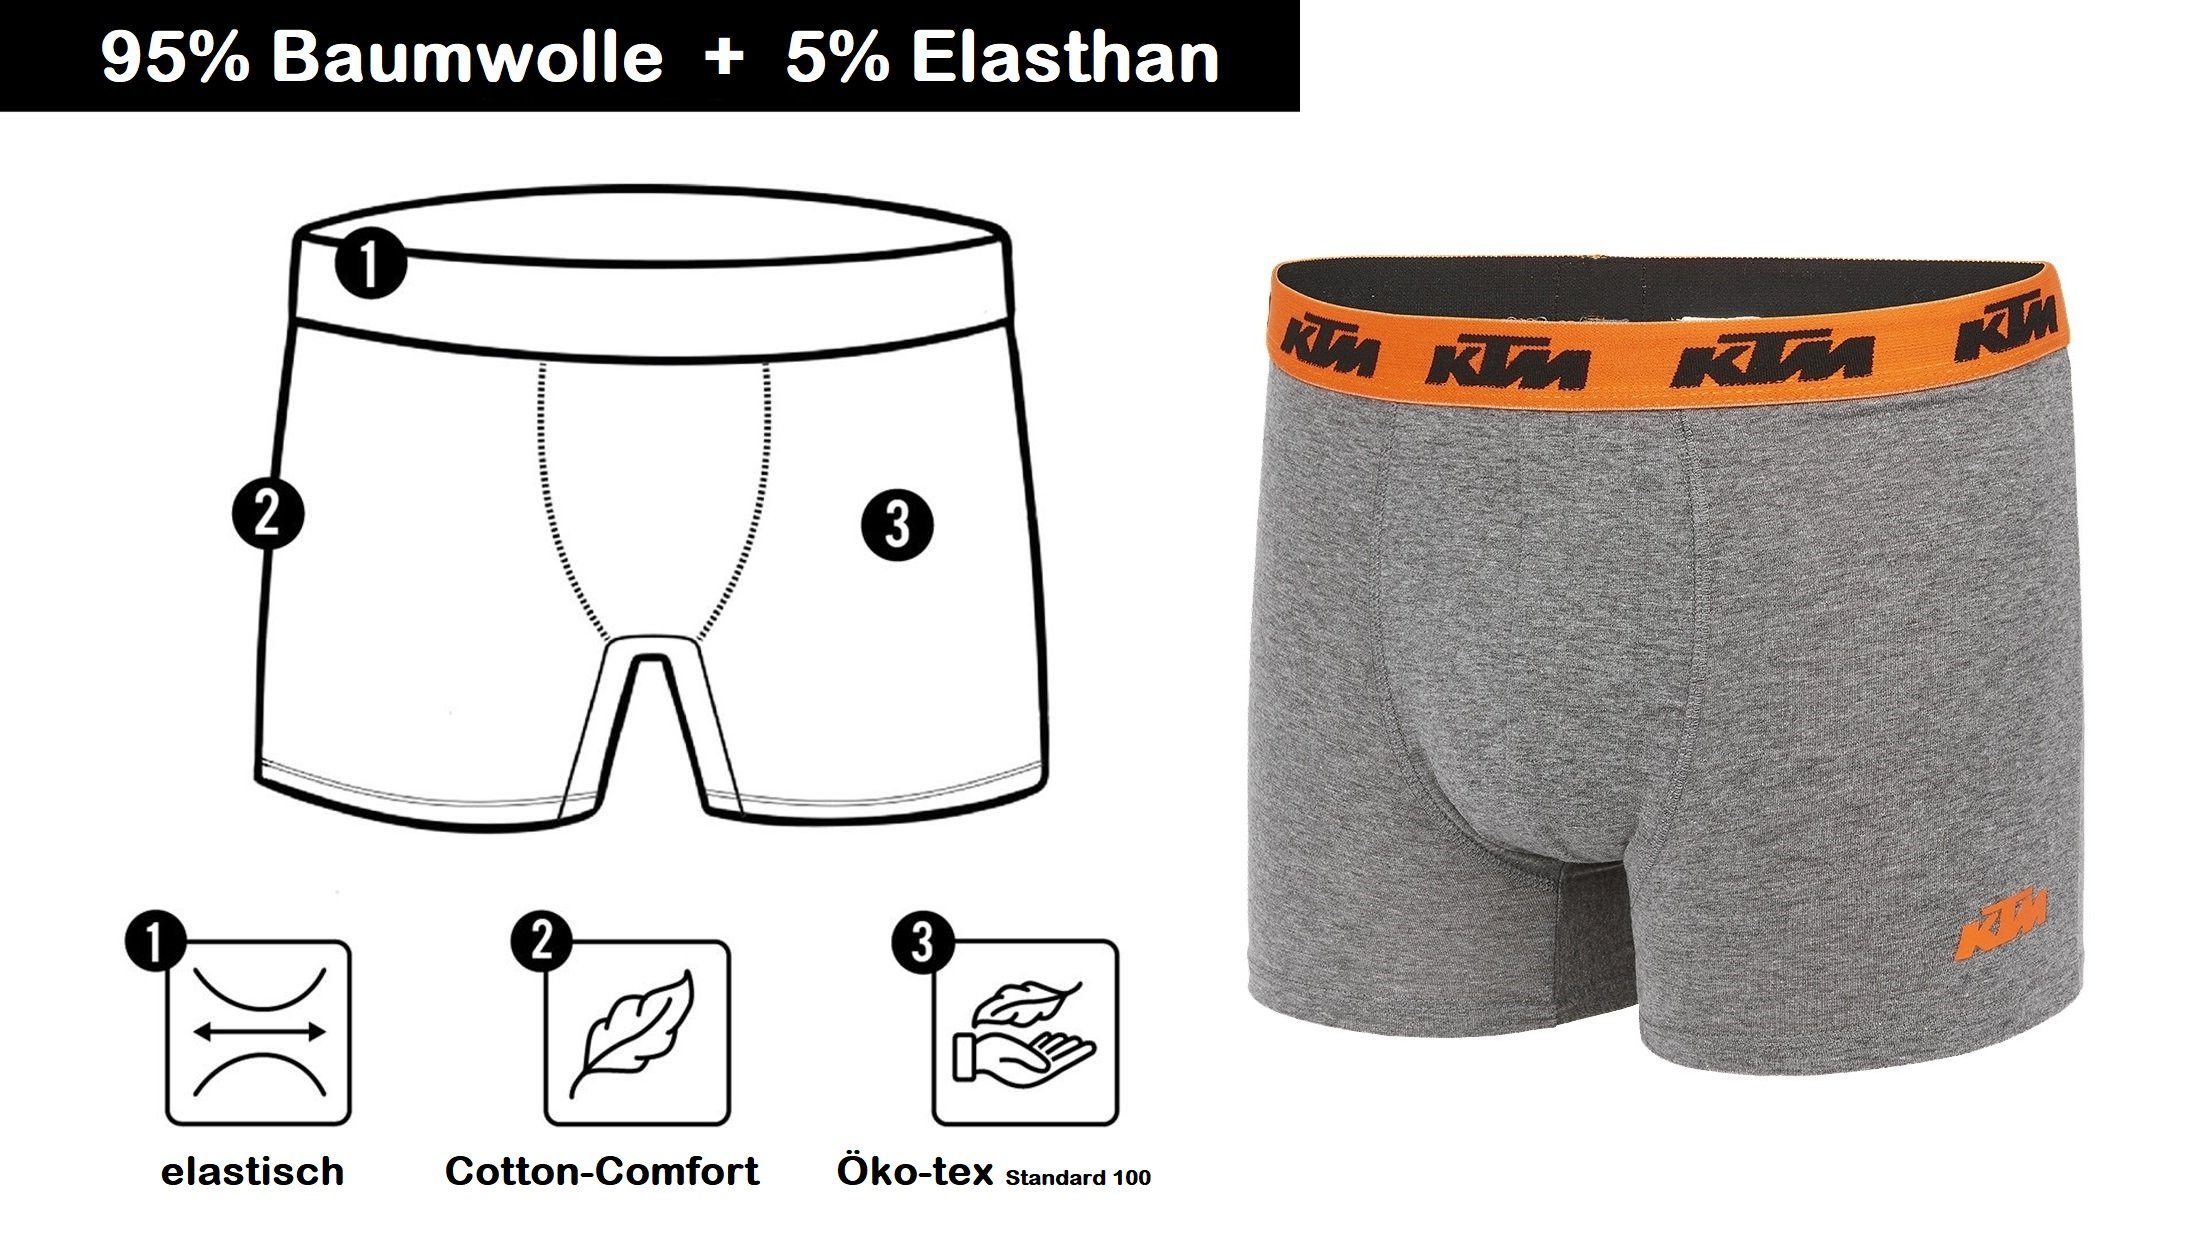 KTM Boxershorts Men Hüft-Shorts Basic auf (2er-Pack) Outdoorsport mit grau-orange Unterhose dem Taillenbund Logo